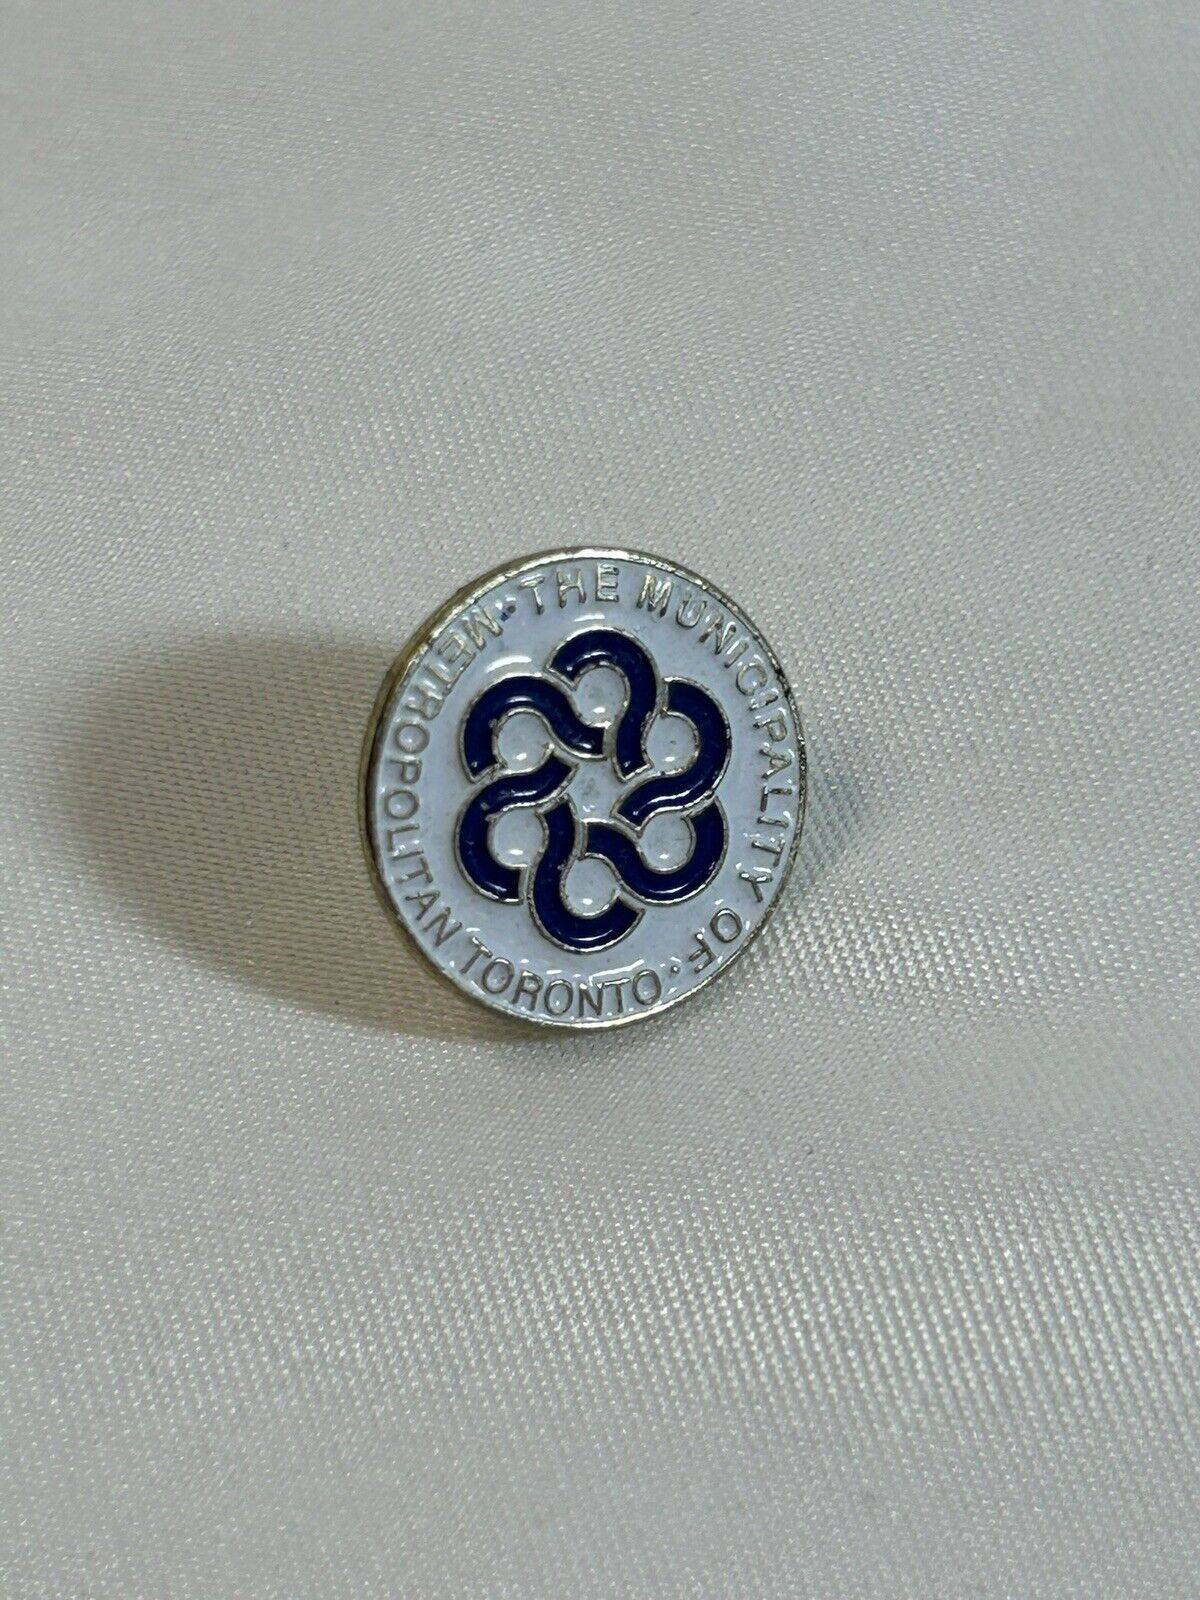 The Municipality of Metropolitan Toronto Collector Lapel Pin Button